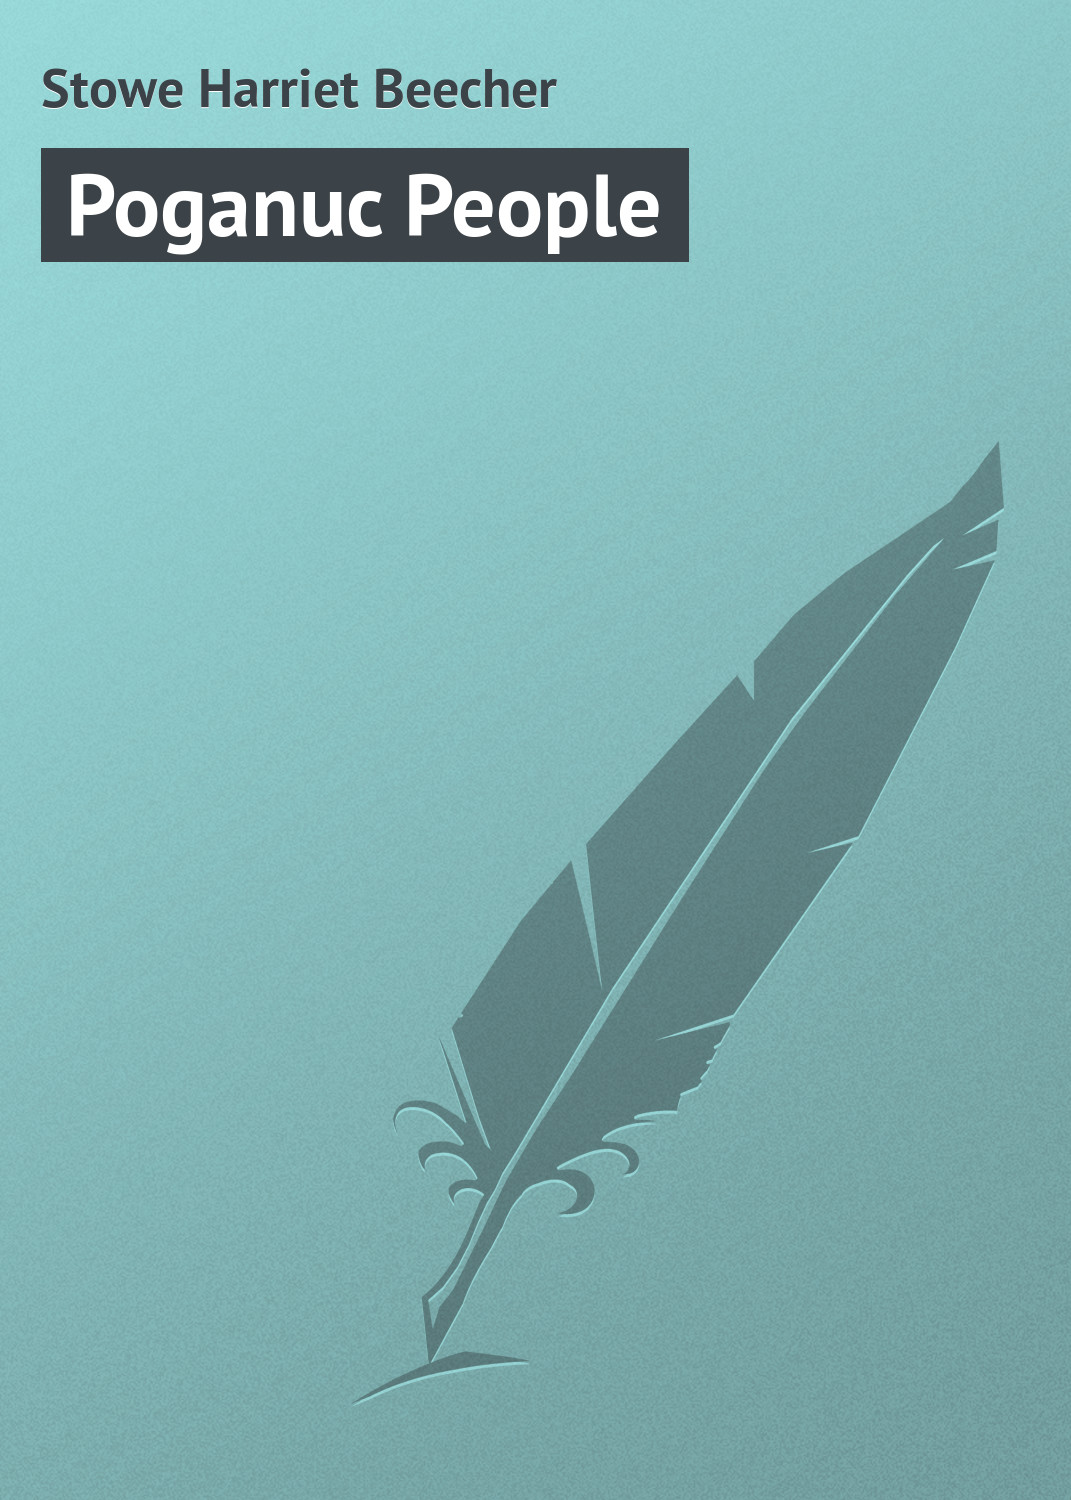 Книга Poganuc People из серии , созданная Harriet Stowe, может относится к жанру Иностранные языки, Зарубежная классика. Стоимость электронной книги Poganuc People с идентификатором 23159667 составляет 5.99 руб.